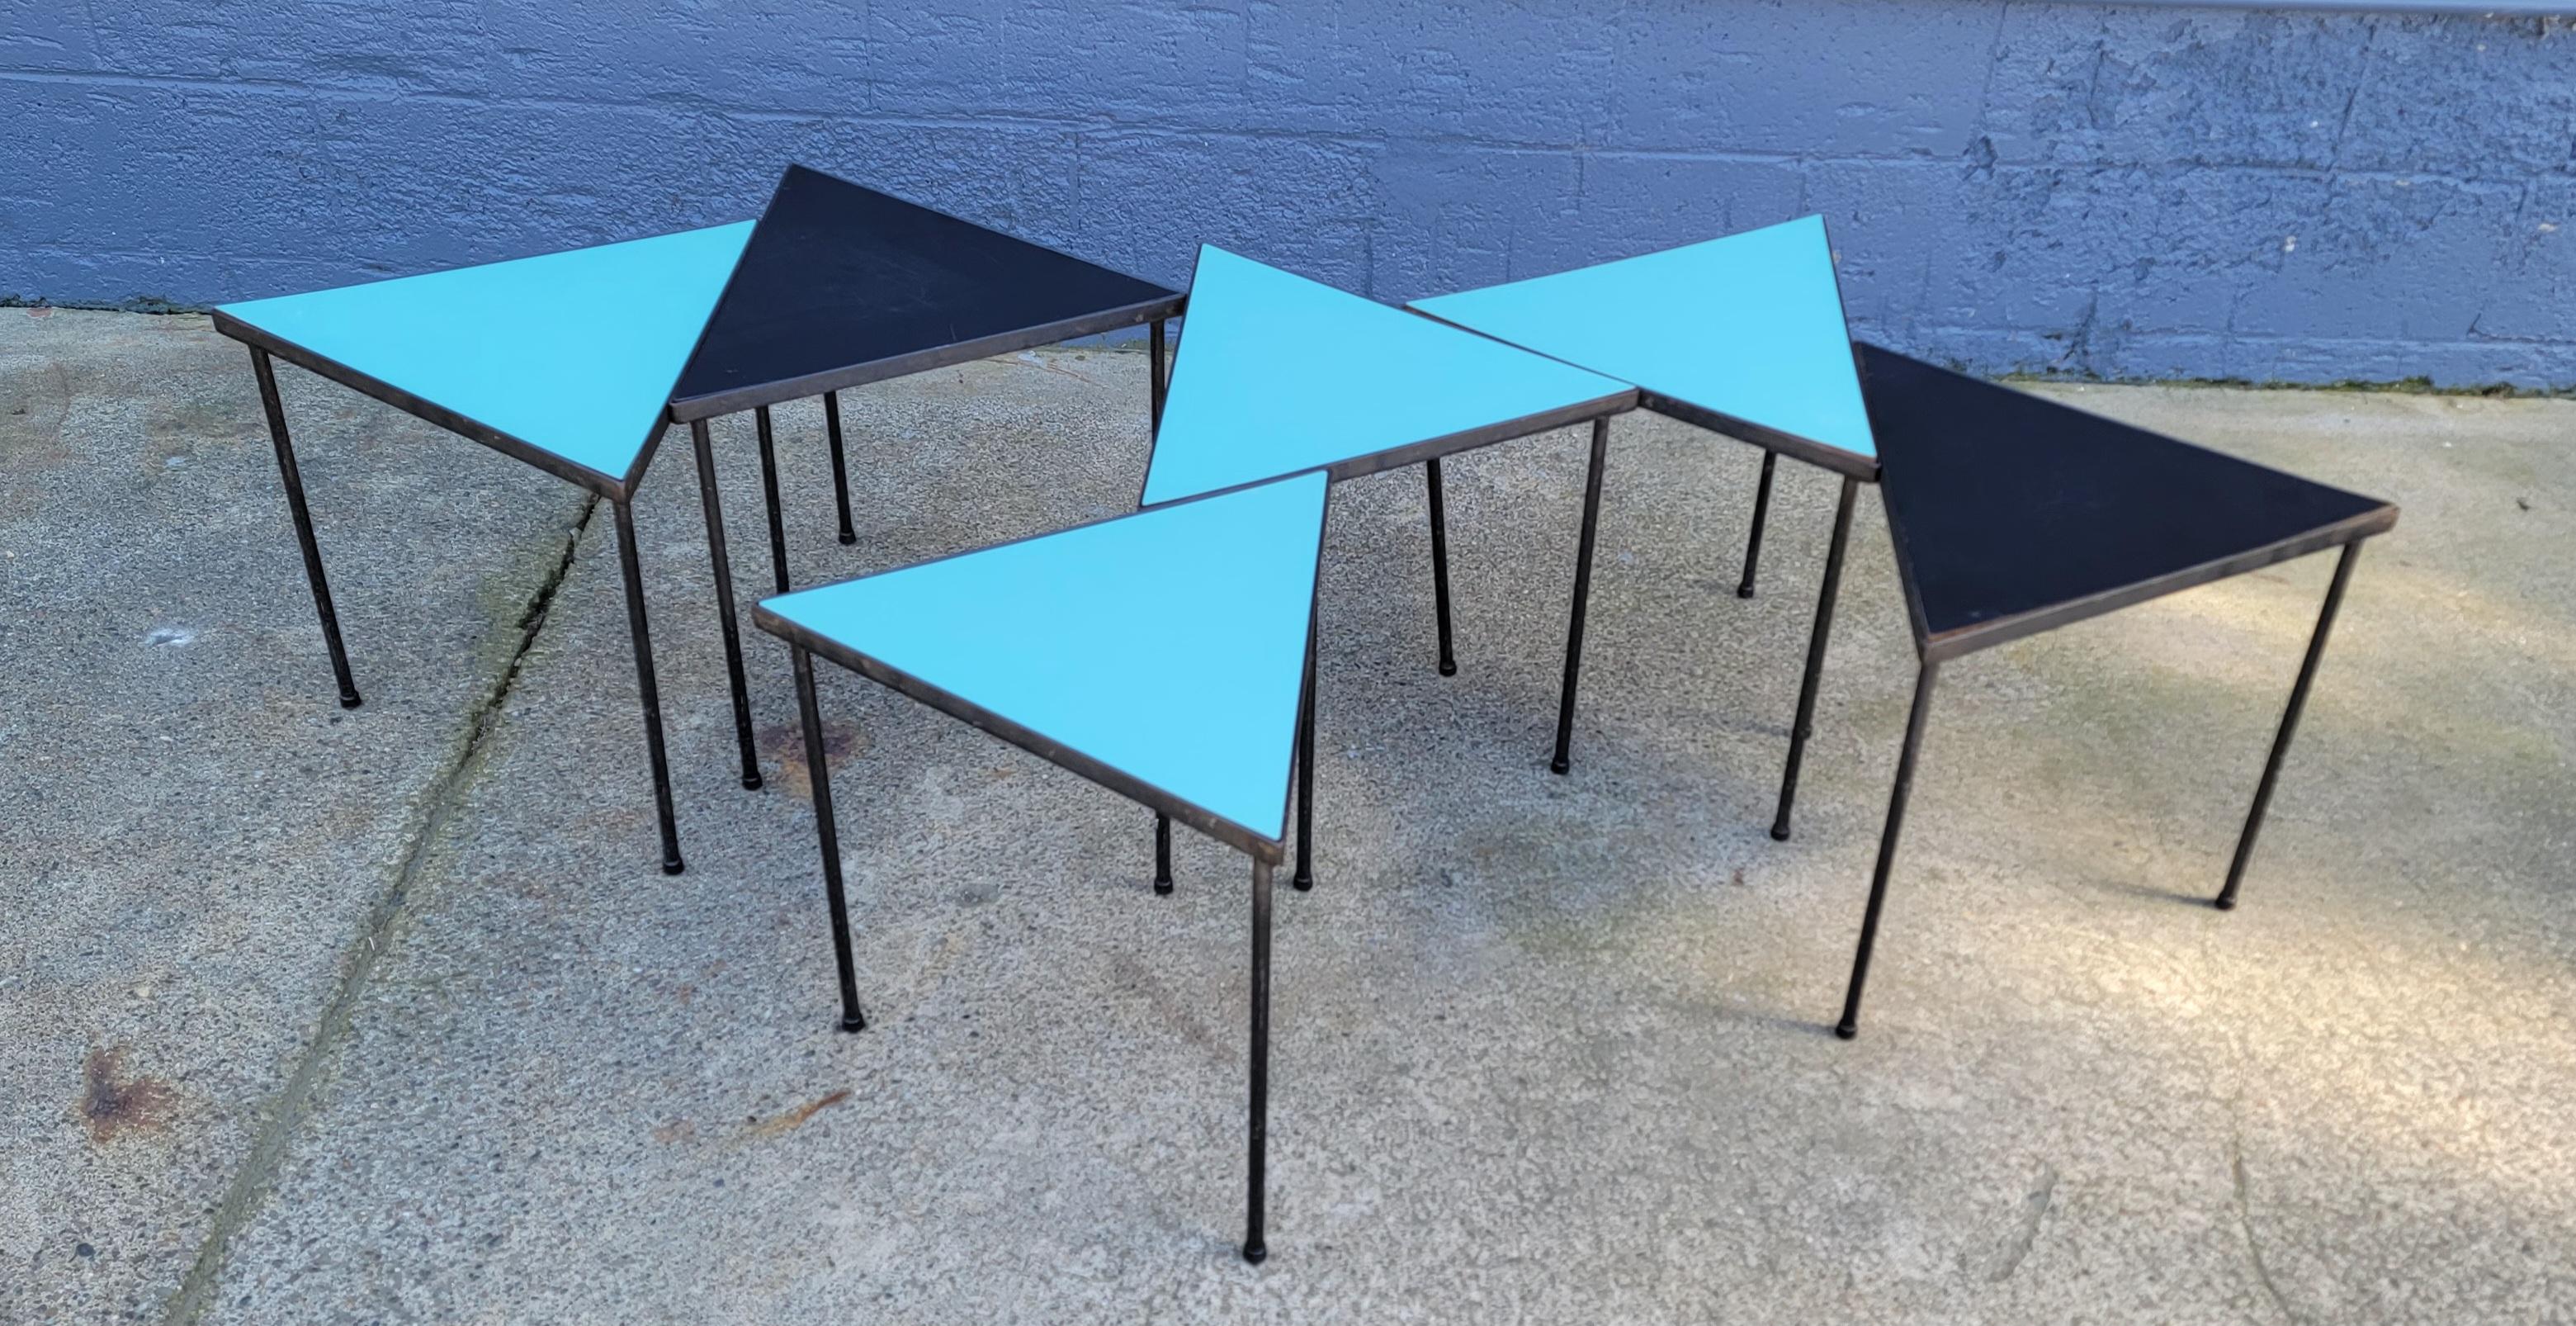 Eine Reihe von mehrfarbigen Tischen mit Eisenfuß und Formica-Platte, die ineinander verschachtelt oder modular aufgebaut werden können. Vier türkisfarbene Oberteile und zwei schwarze Oberteile. Diese Tische können ineinander gestapelt oder in